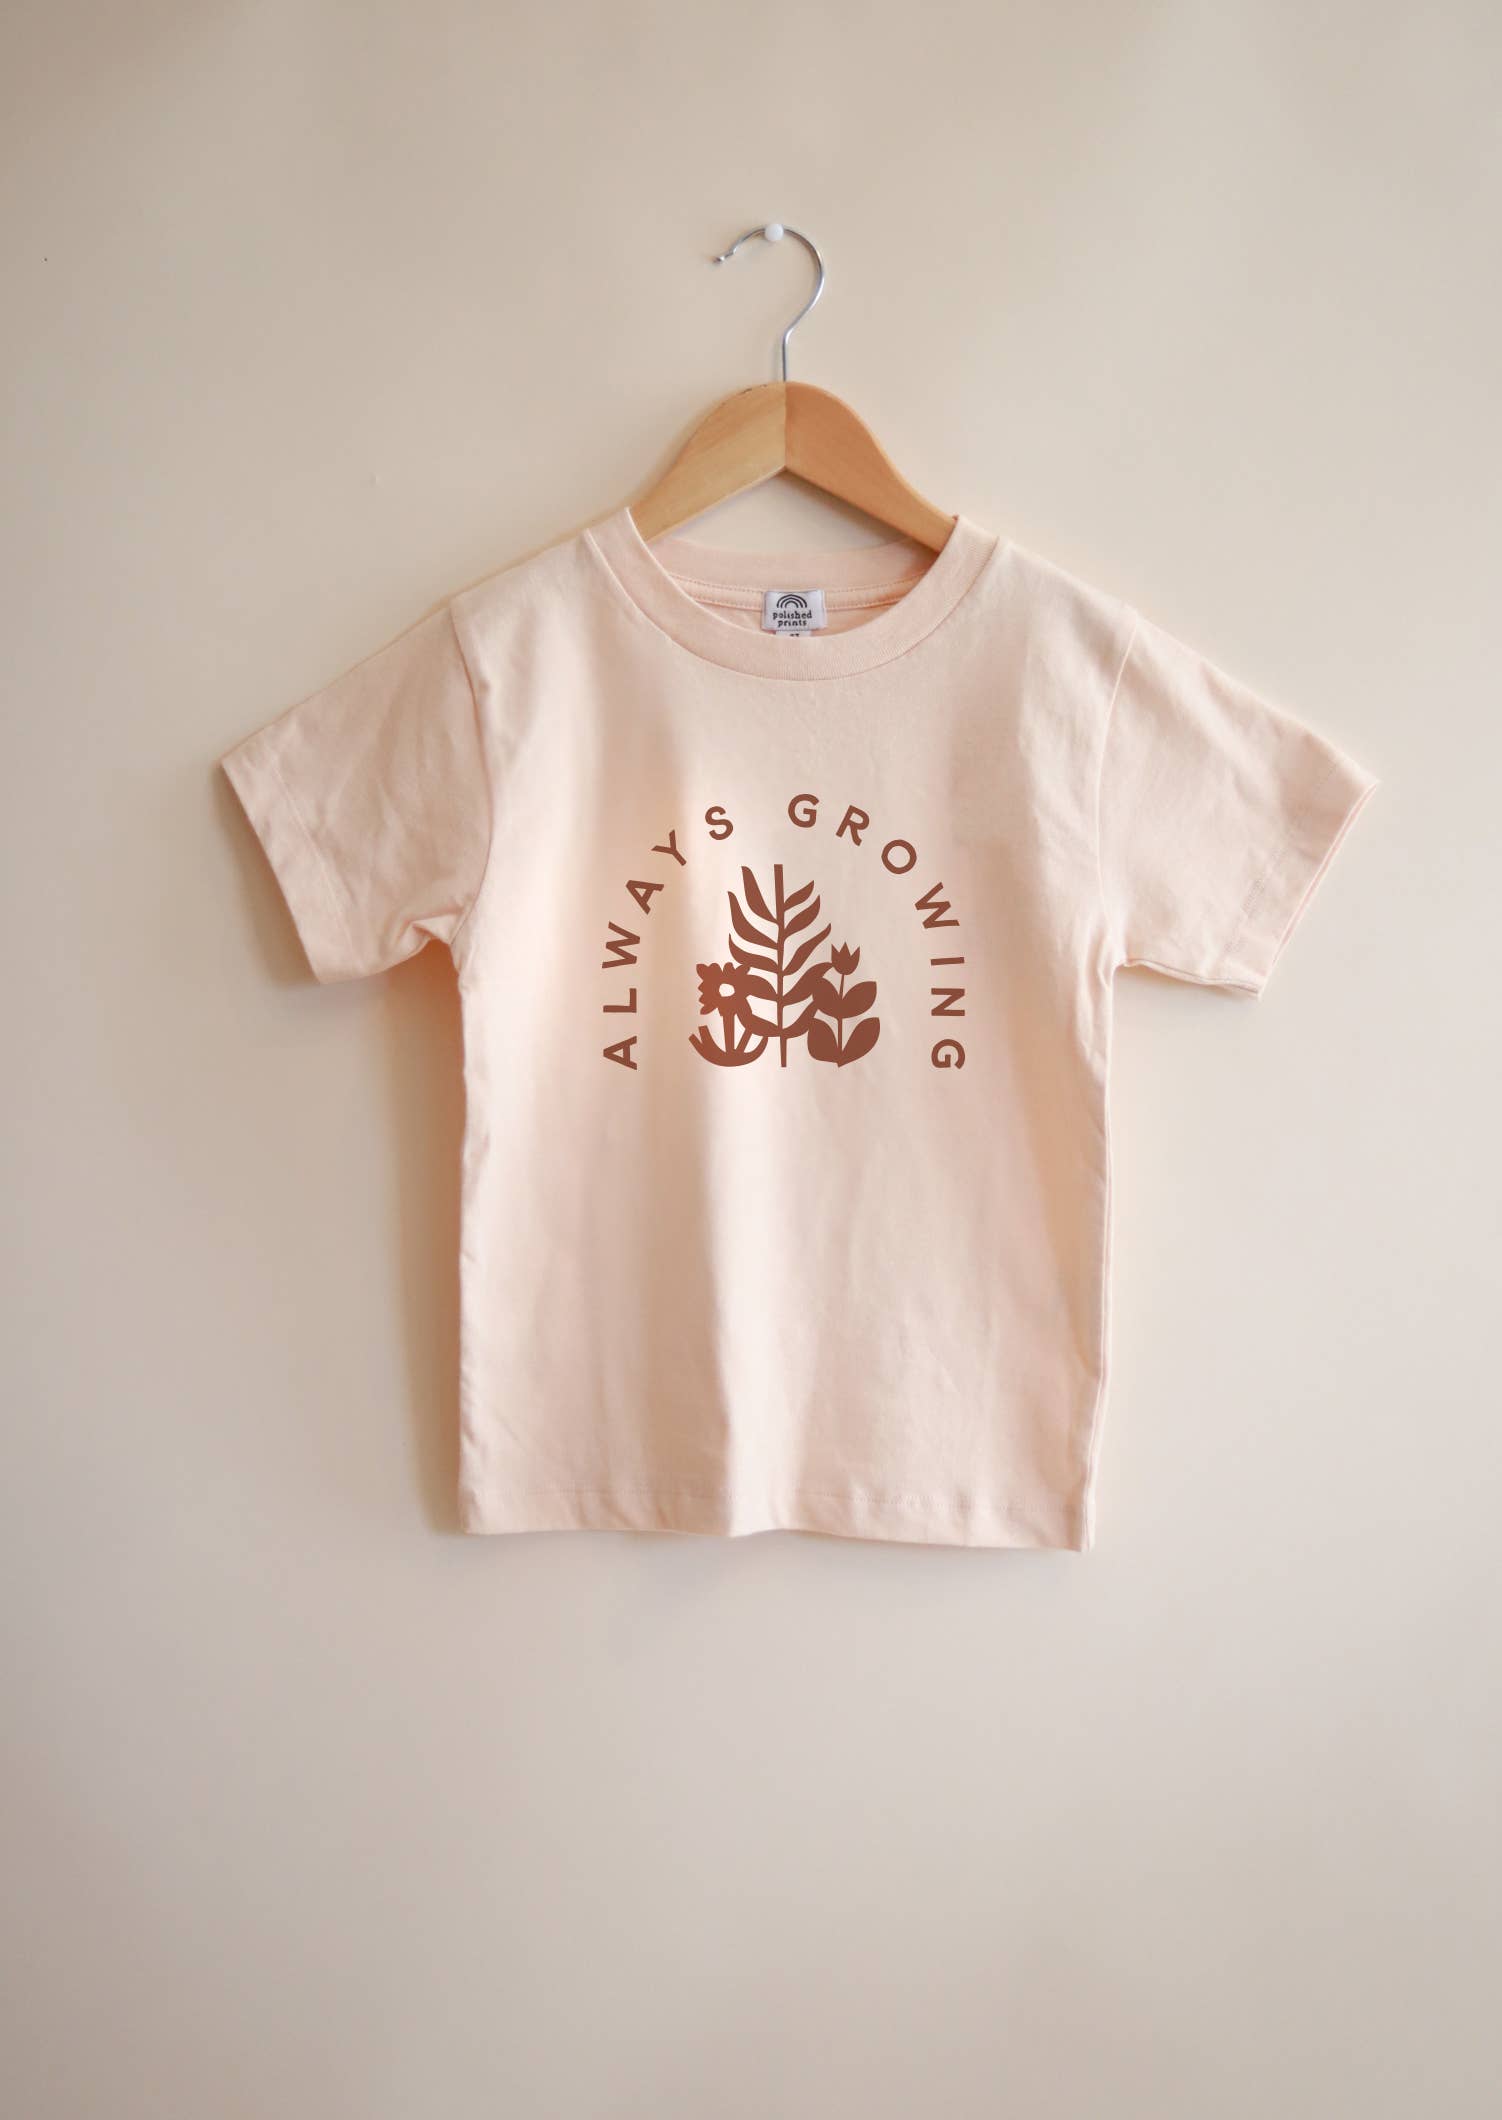 Always Growing Printed Tee, Toddler T-shirt, Kid's Shirt